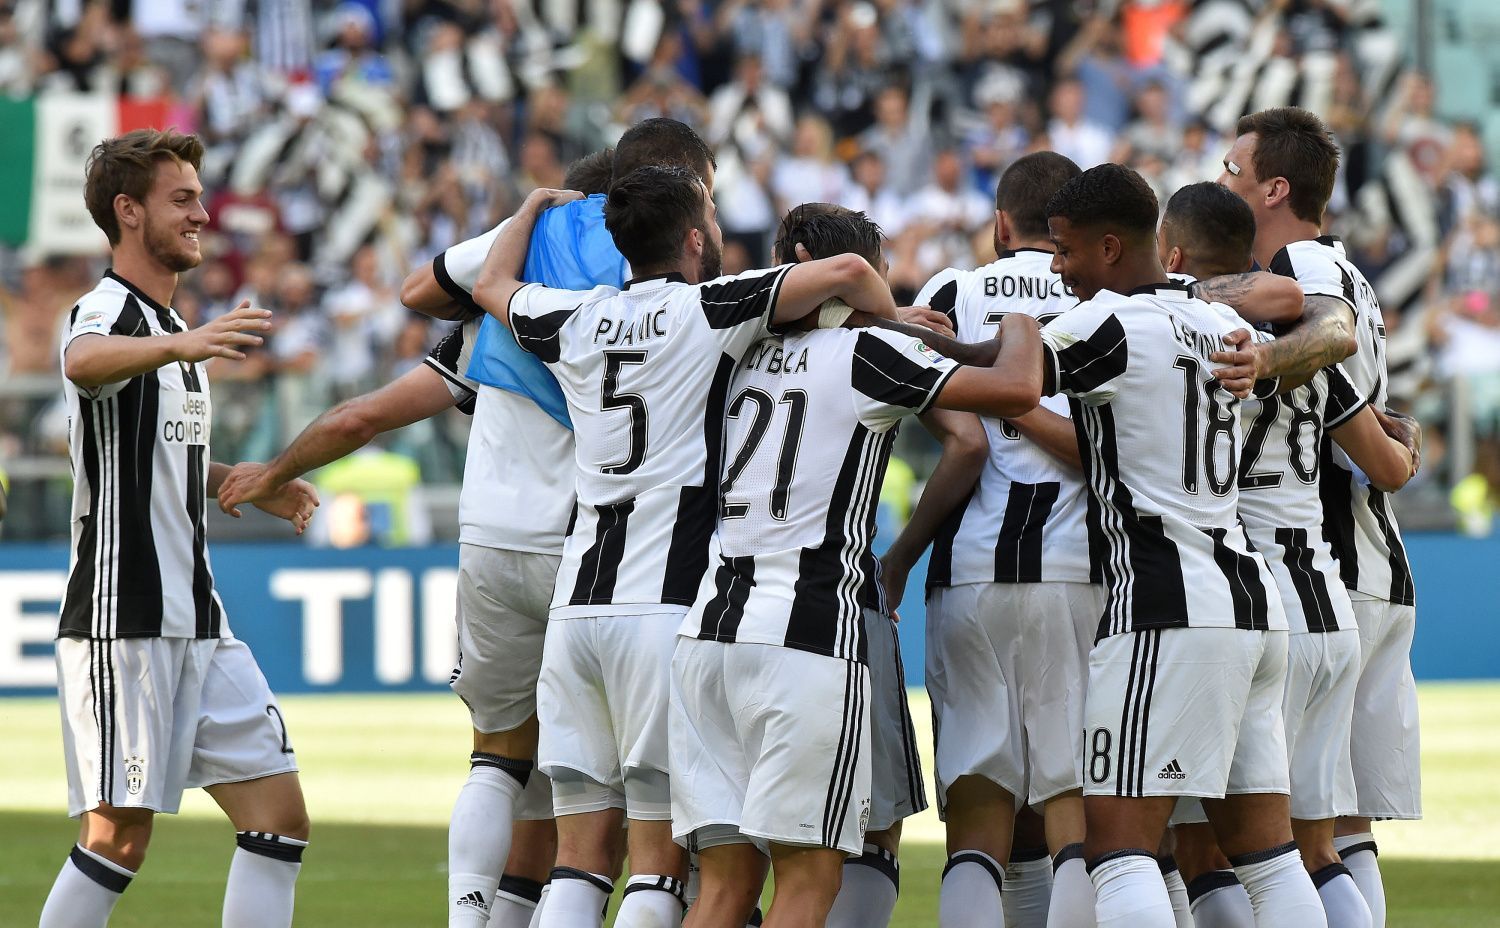 Fotbalisté Juventusu slaví zisk titulu v italské lize